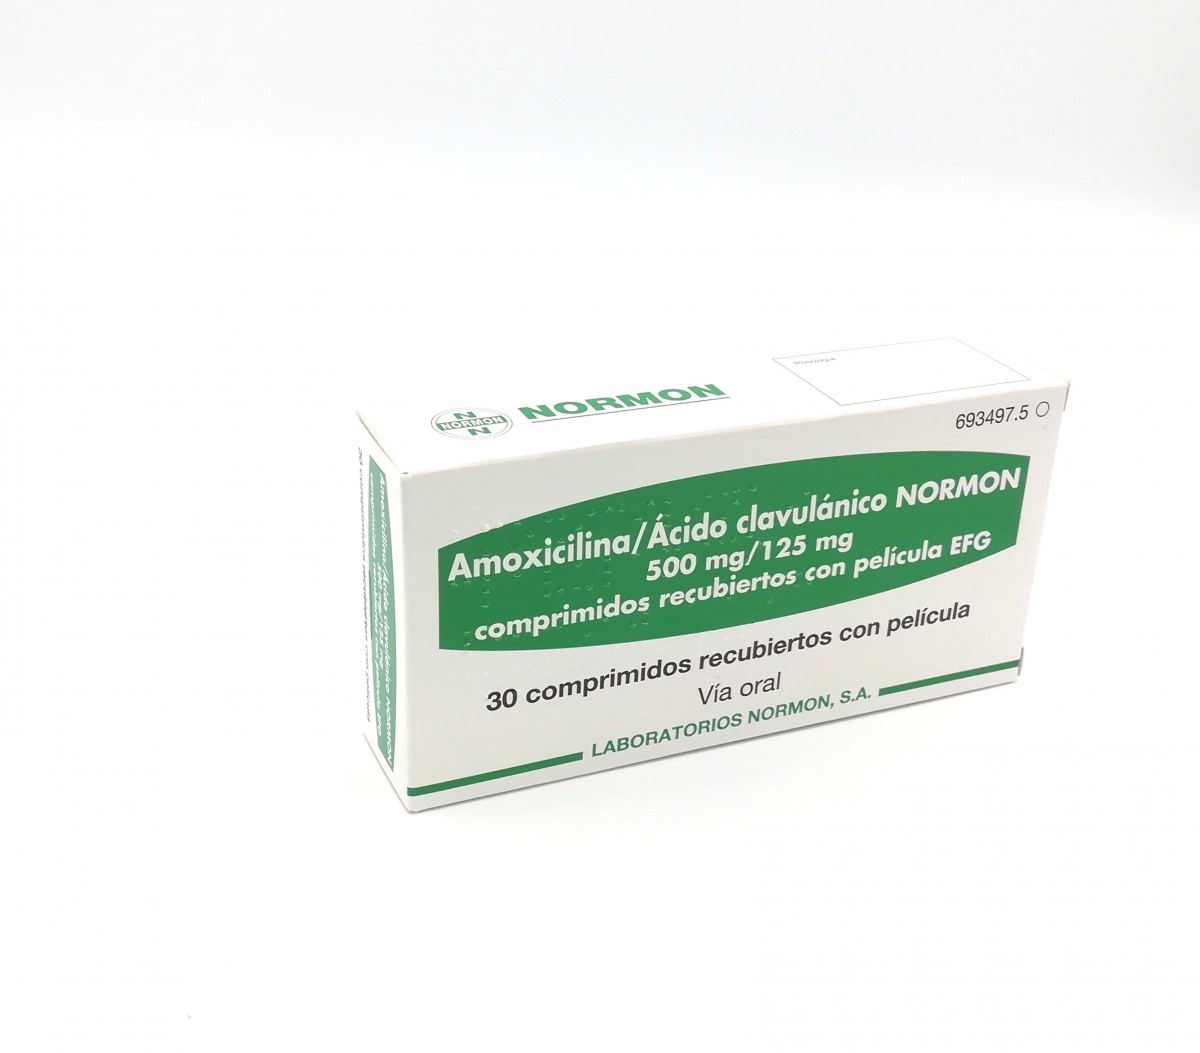 AMOXICILINA/ACIDO CLAVULANICO NORMON 500 mg /125 mg COMPRIMIDOS RECUBIERTOS CON PELICULA EFG, 500 comprimidos fotografía del envase.